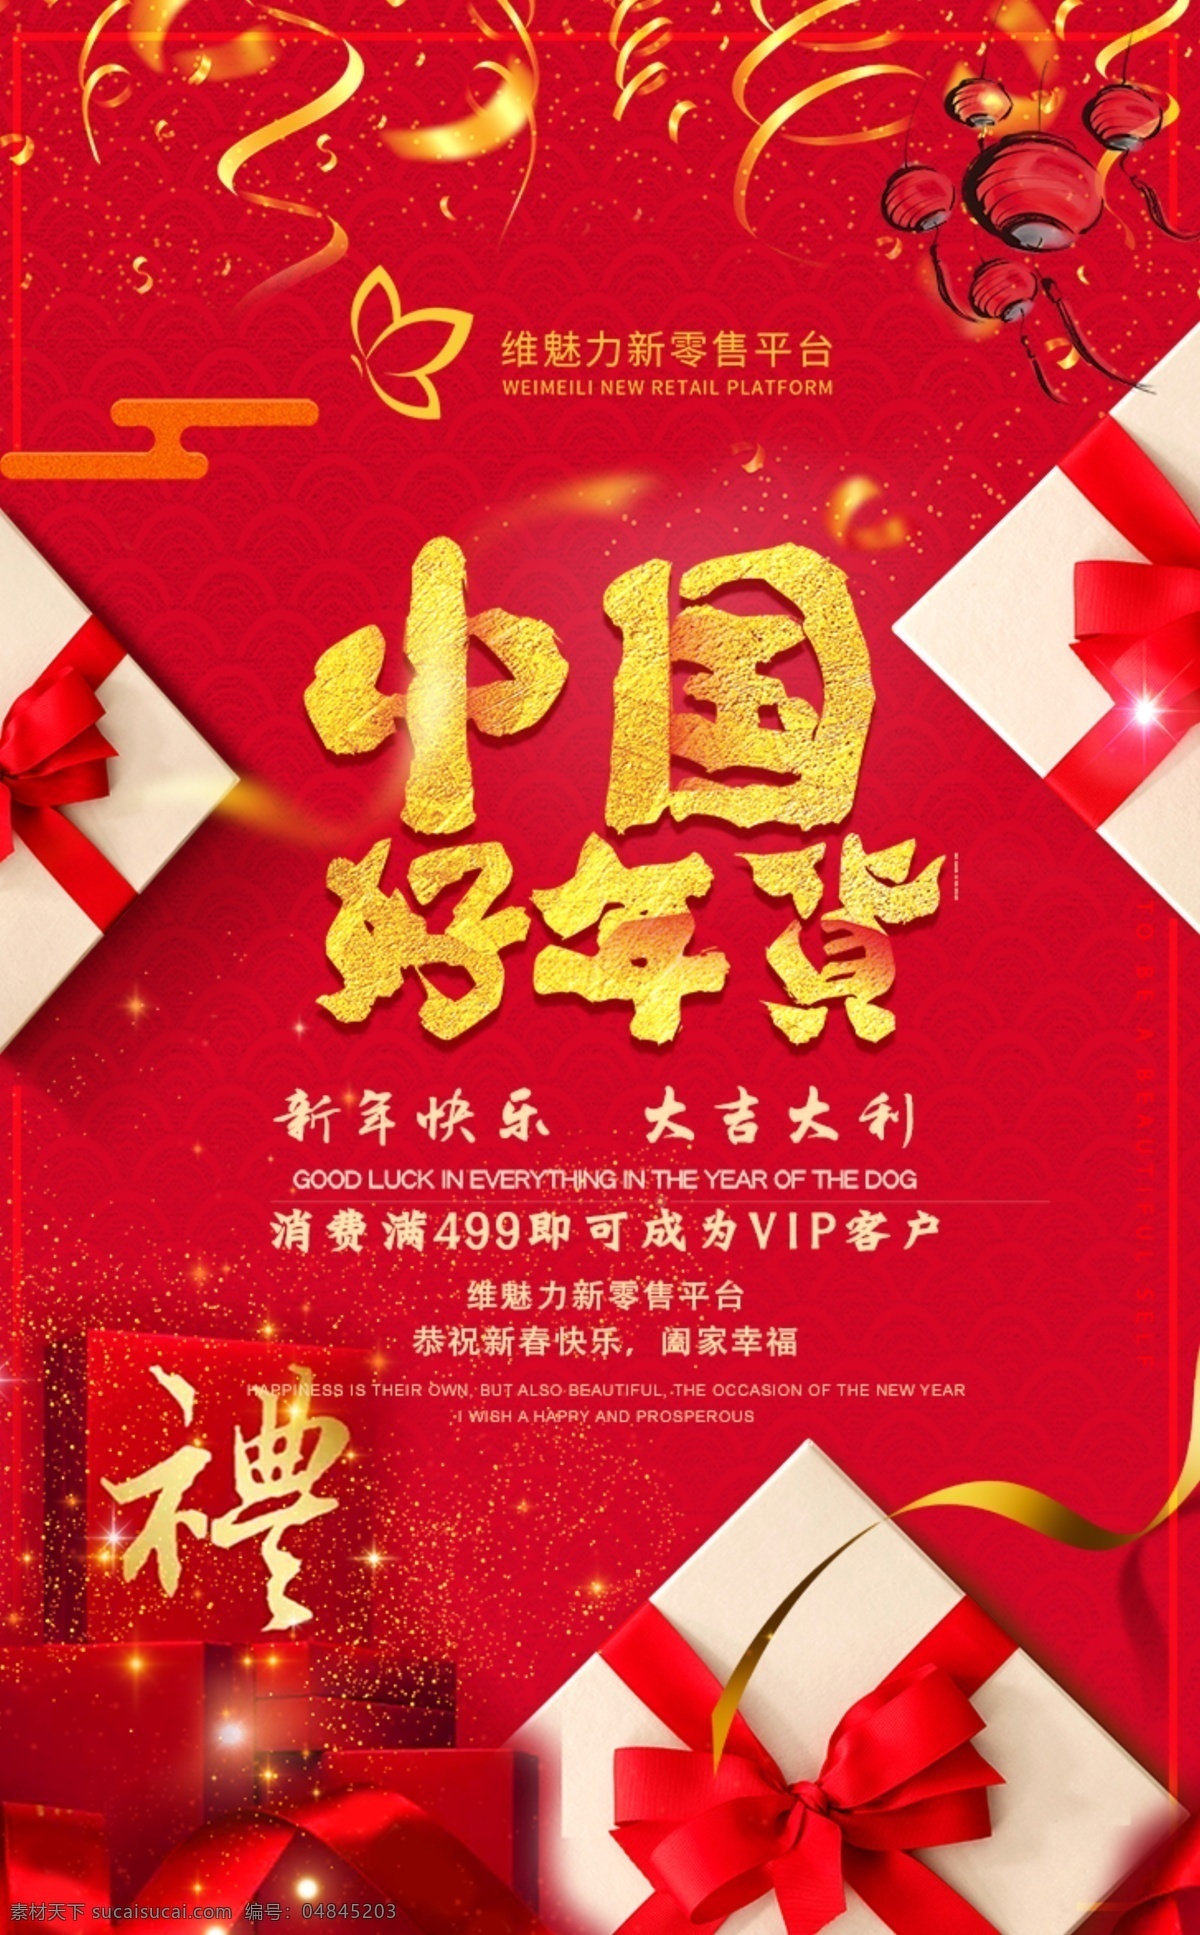 中国好年货 微商 宣传 平台 红色 简约 好看 海报 模板 年货 送礼 祝福 文化艺术 影视娱乐